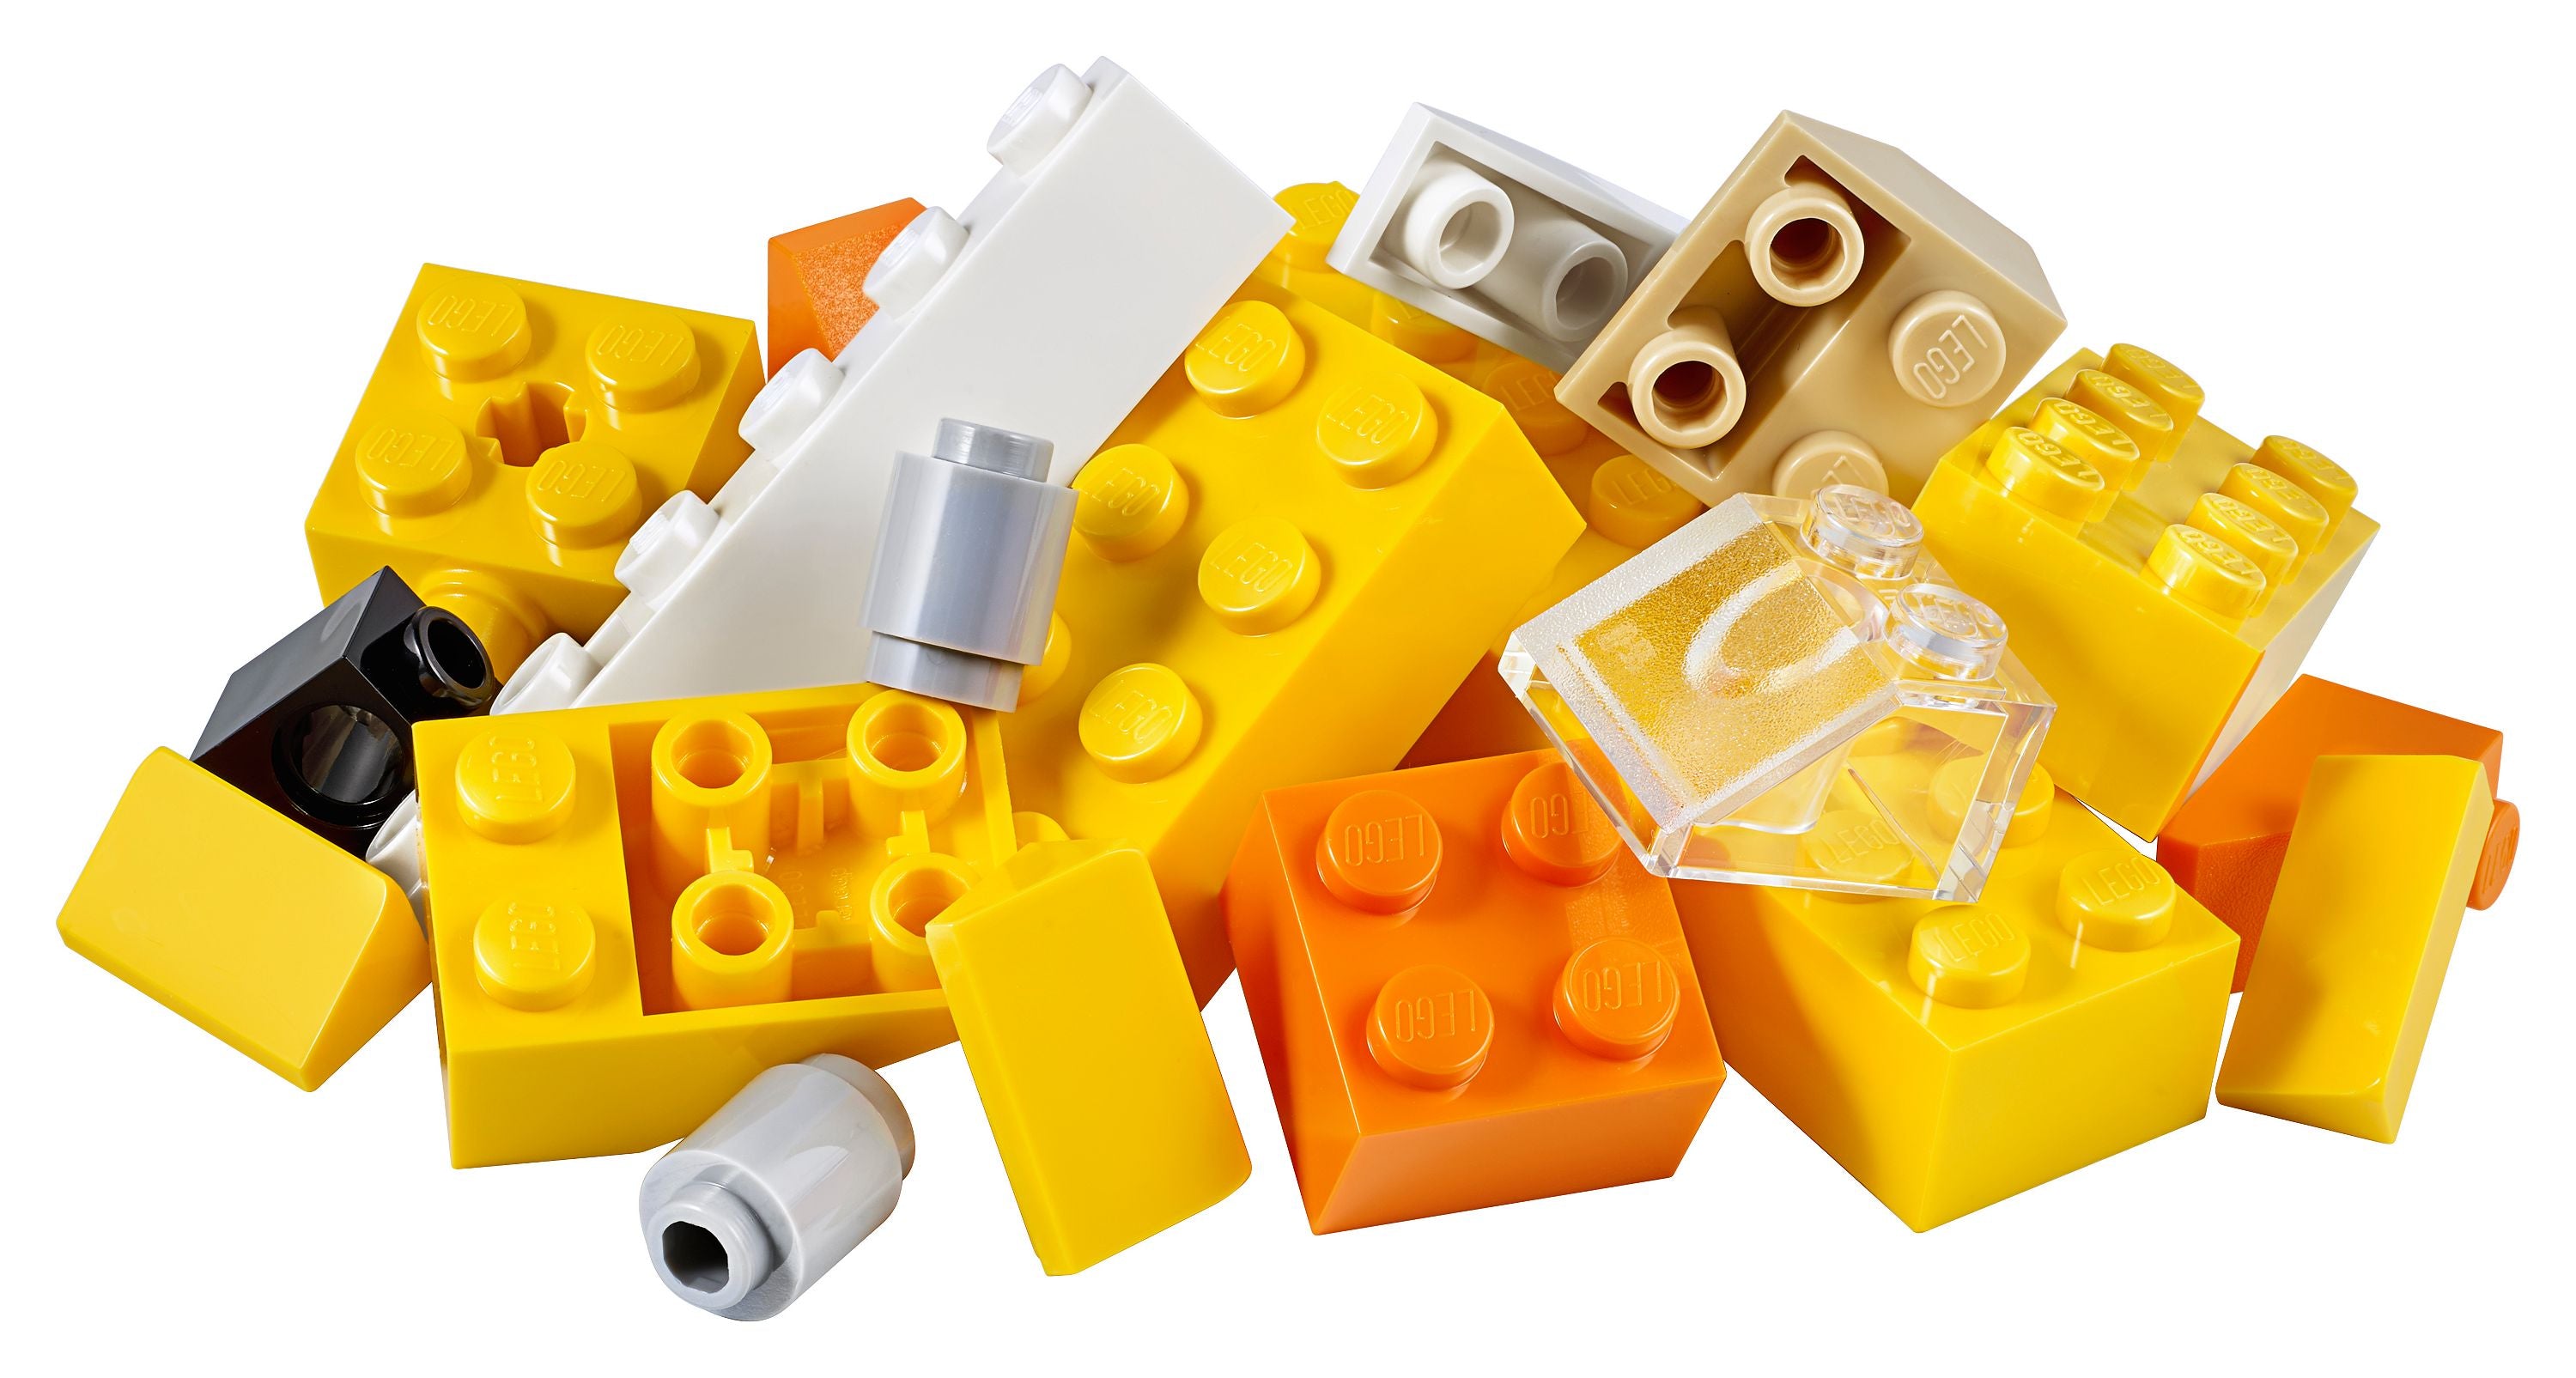 LEGO Aged 4 Plus Classic Basic Brick Of 134 Piece Sets